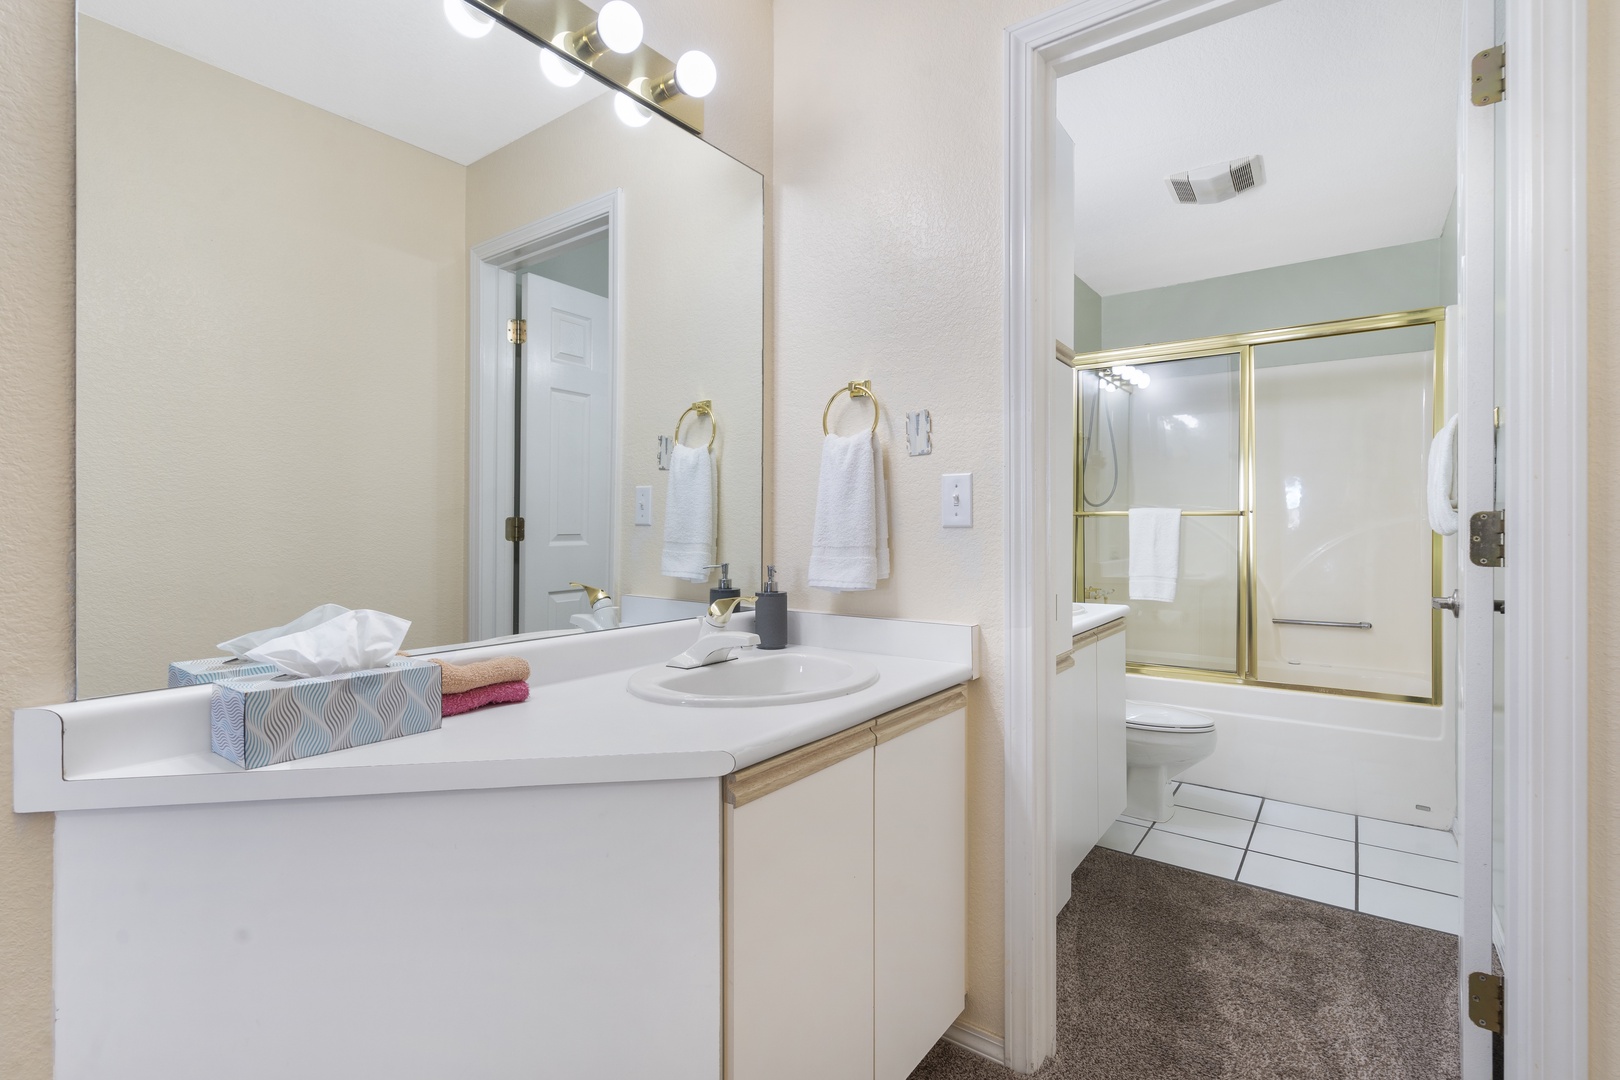 Bathroom # Shower/Tub Combo En-Suite to Bedroom #2